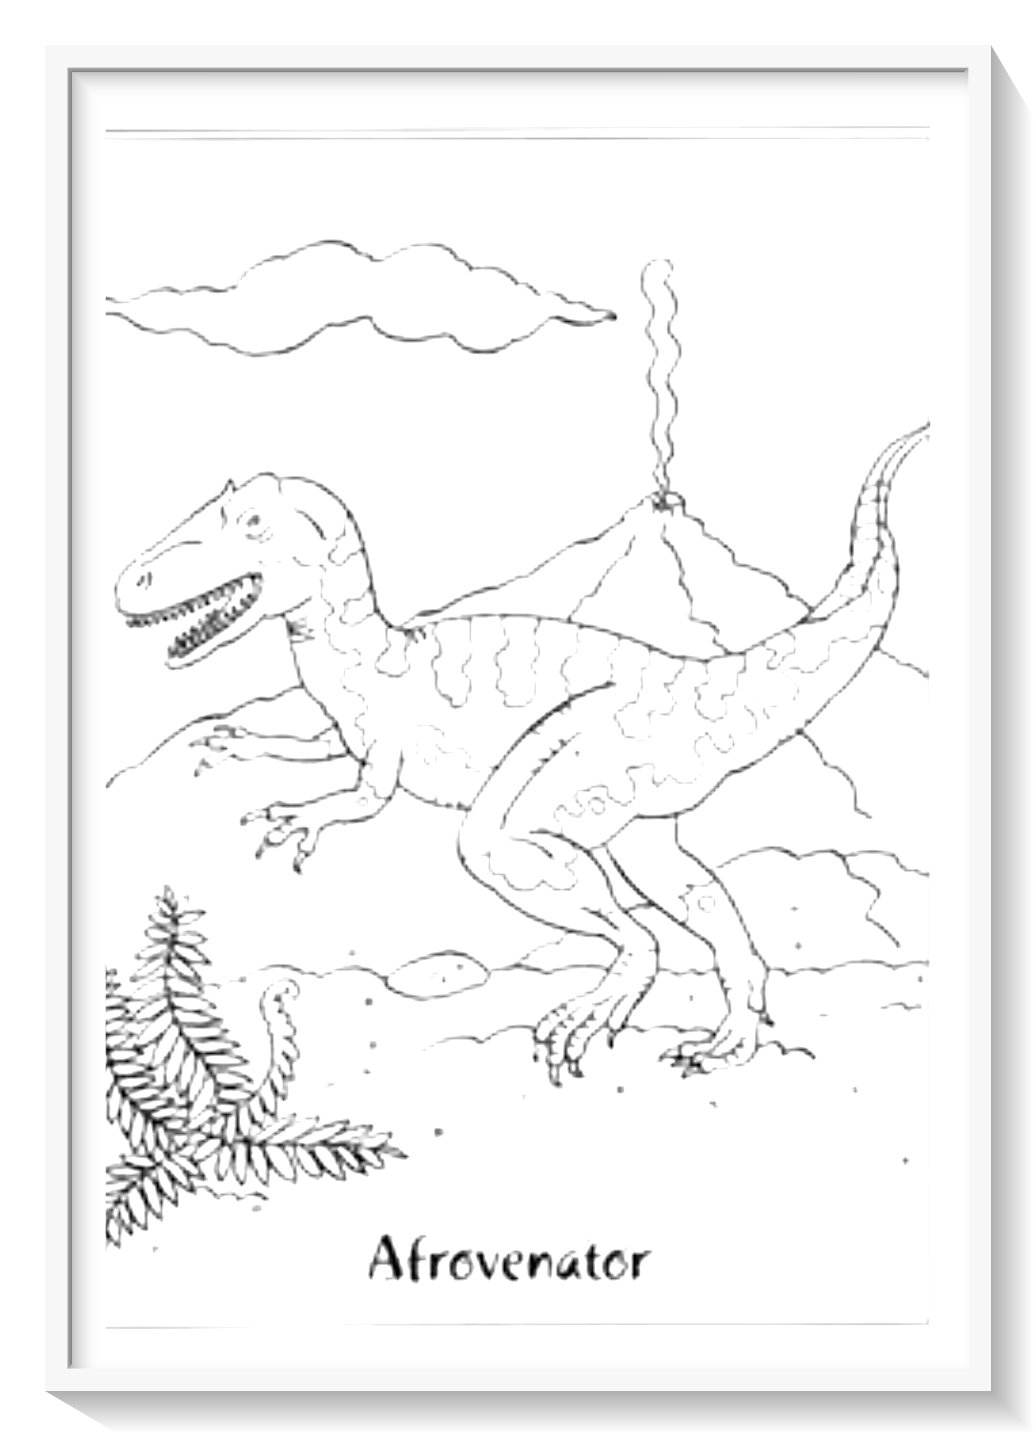 juegos de pintar dinosaurios gigantes